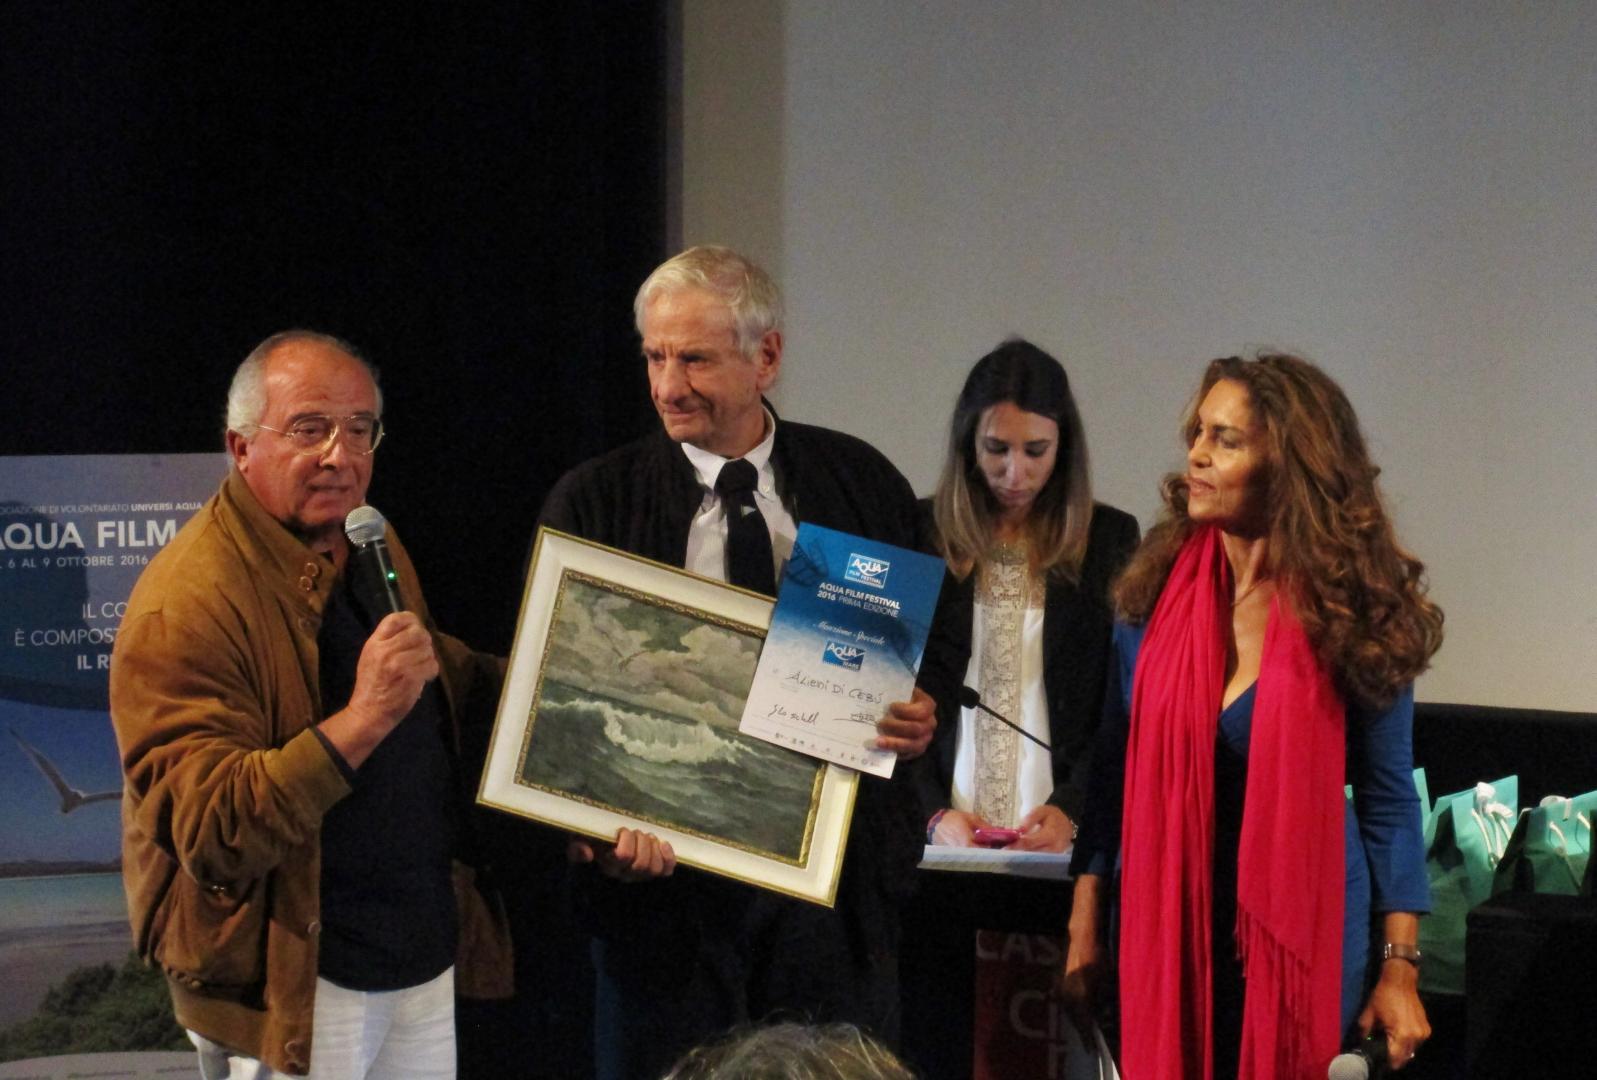 Il comandante Busetto premia il regista del cortometraggio menzione speciale aqua mare all'Aquafilmfestival